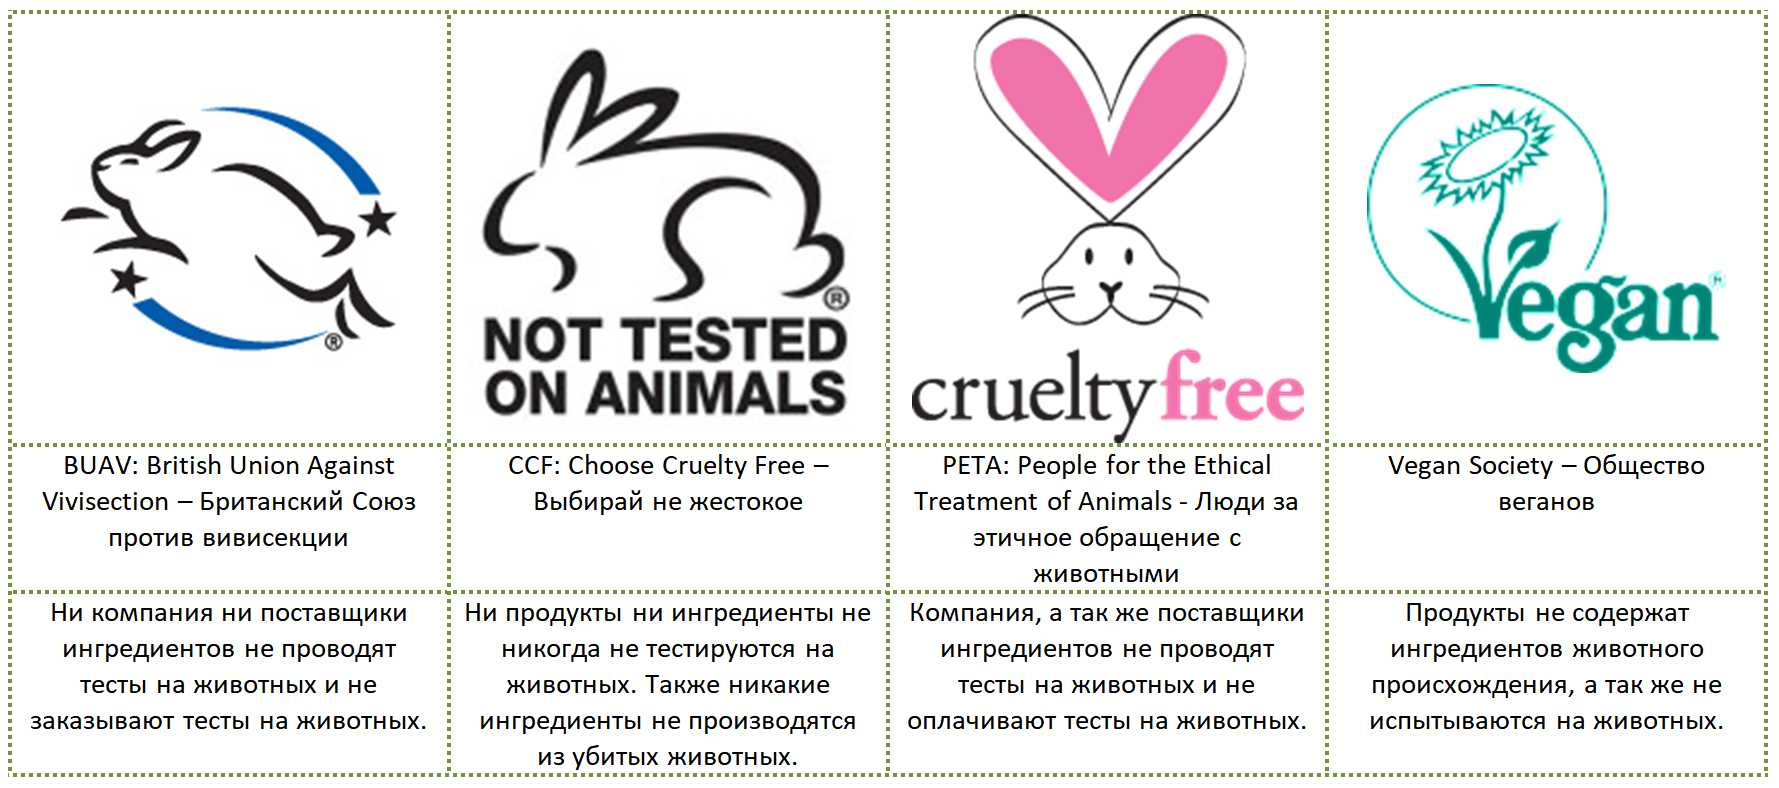 Оформить Сертификат “Не тестируется на животных” в Крыму